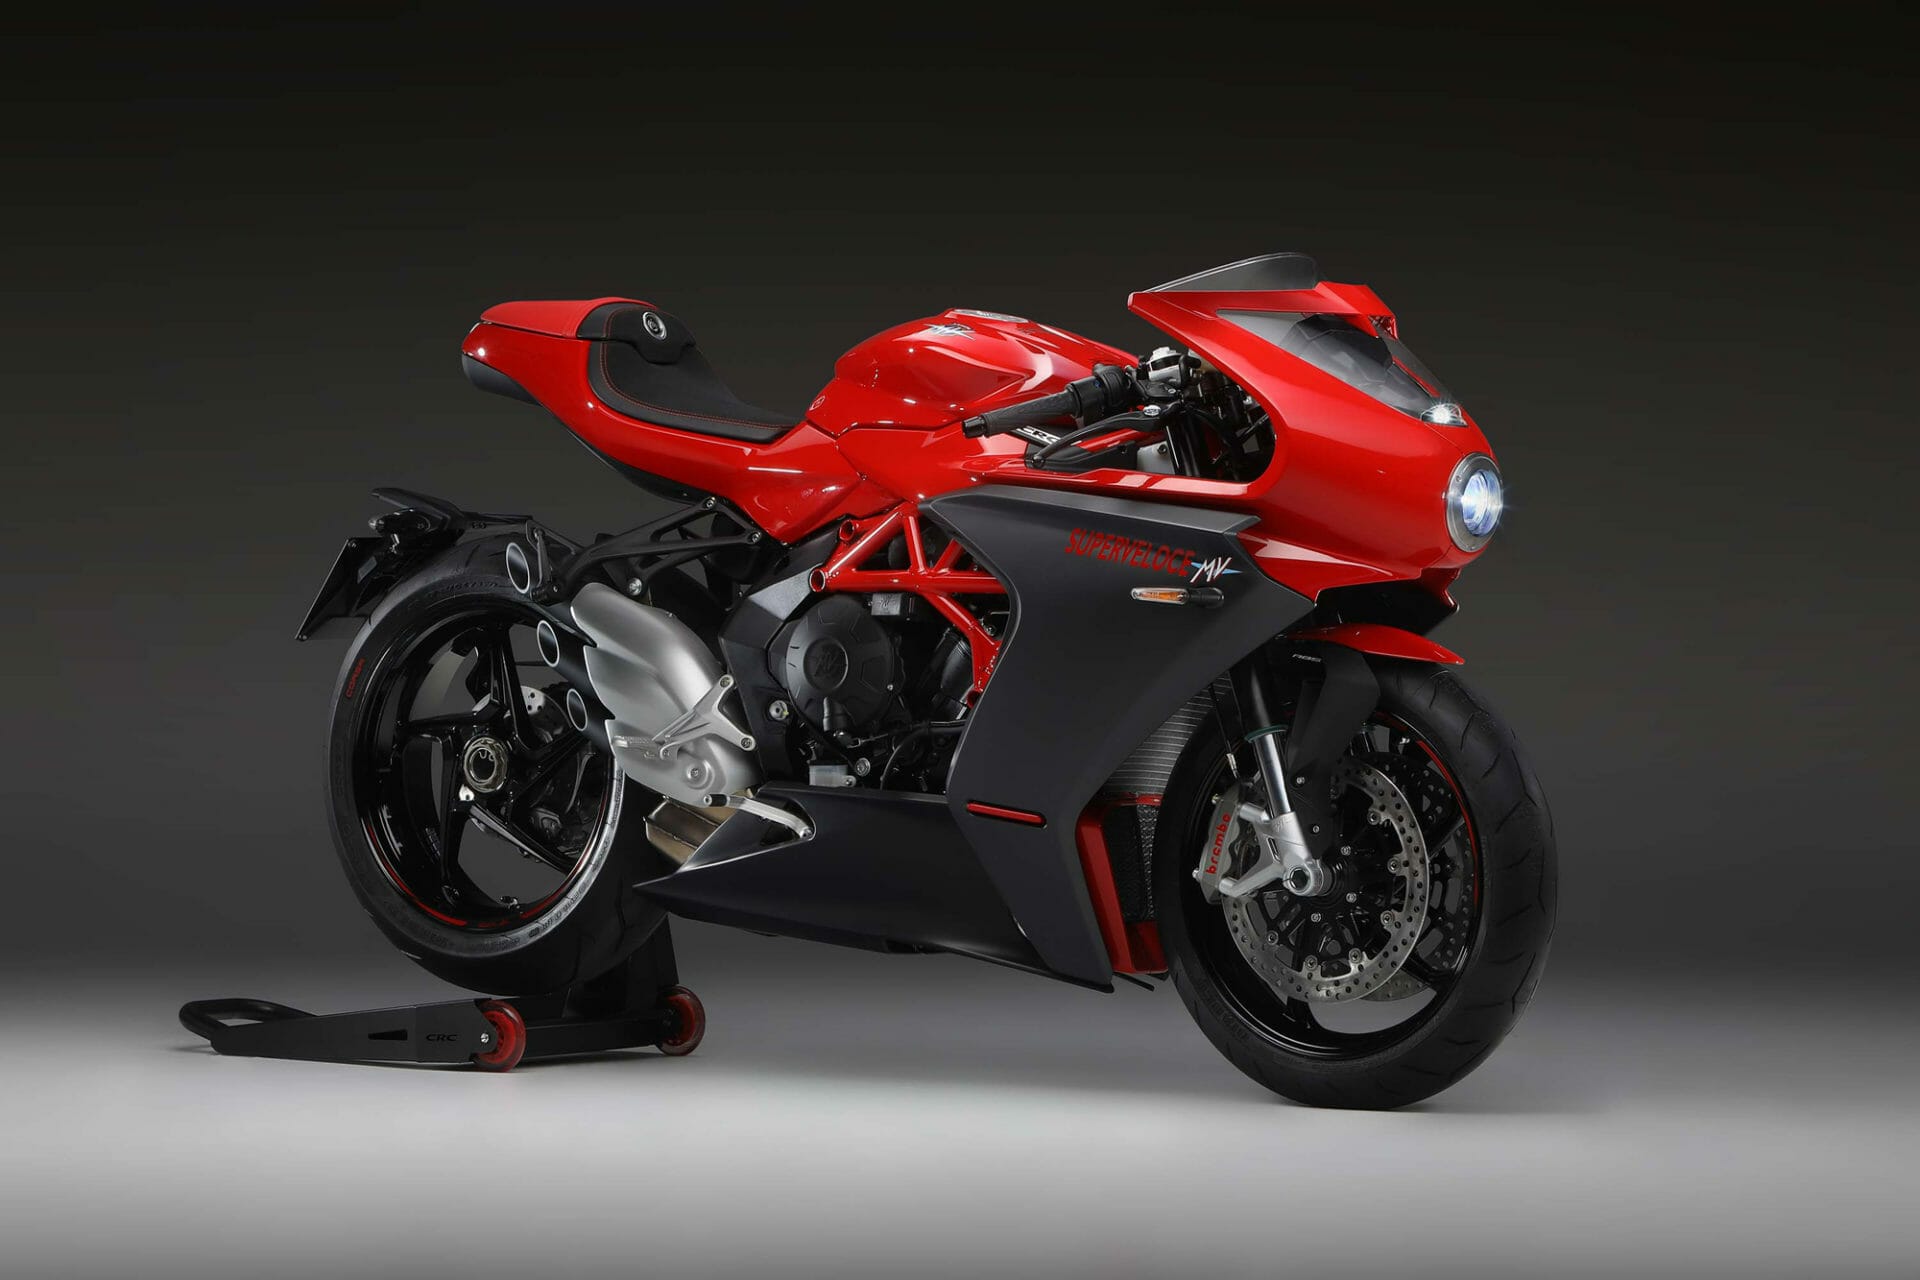 #MVAgusta #Superveloce800 Rosso
- auch in der Motorrad Nachrichten App